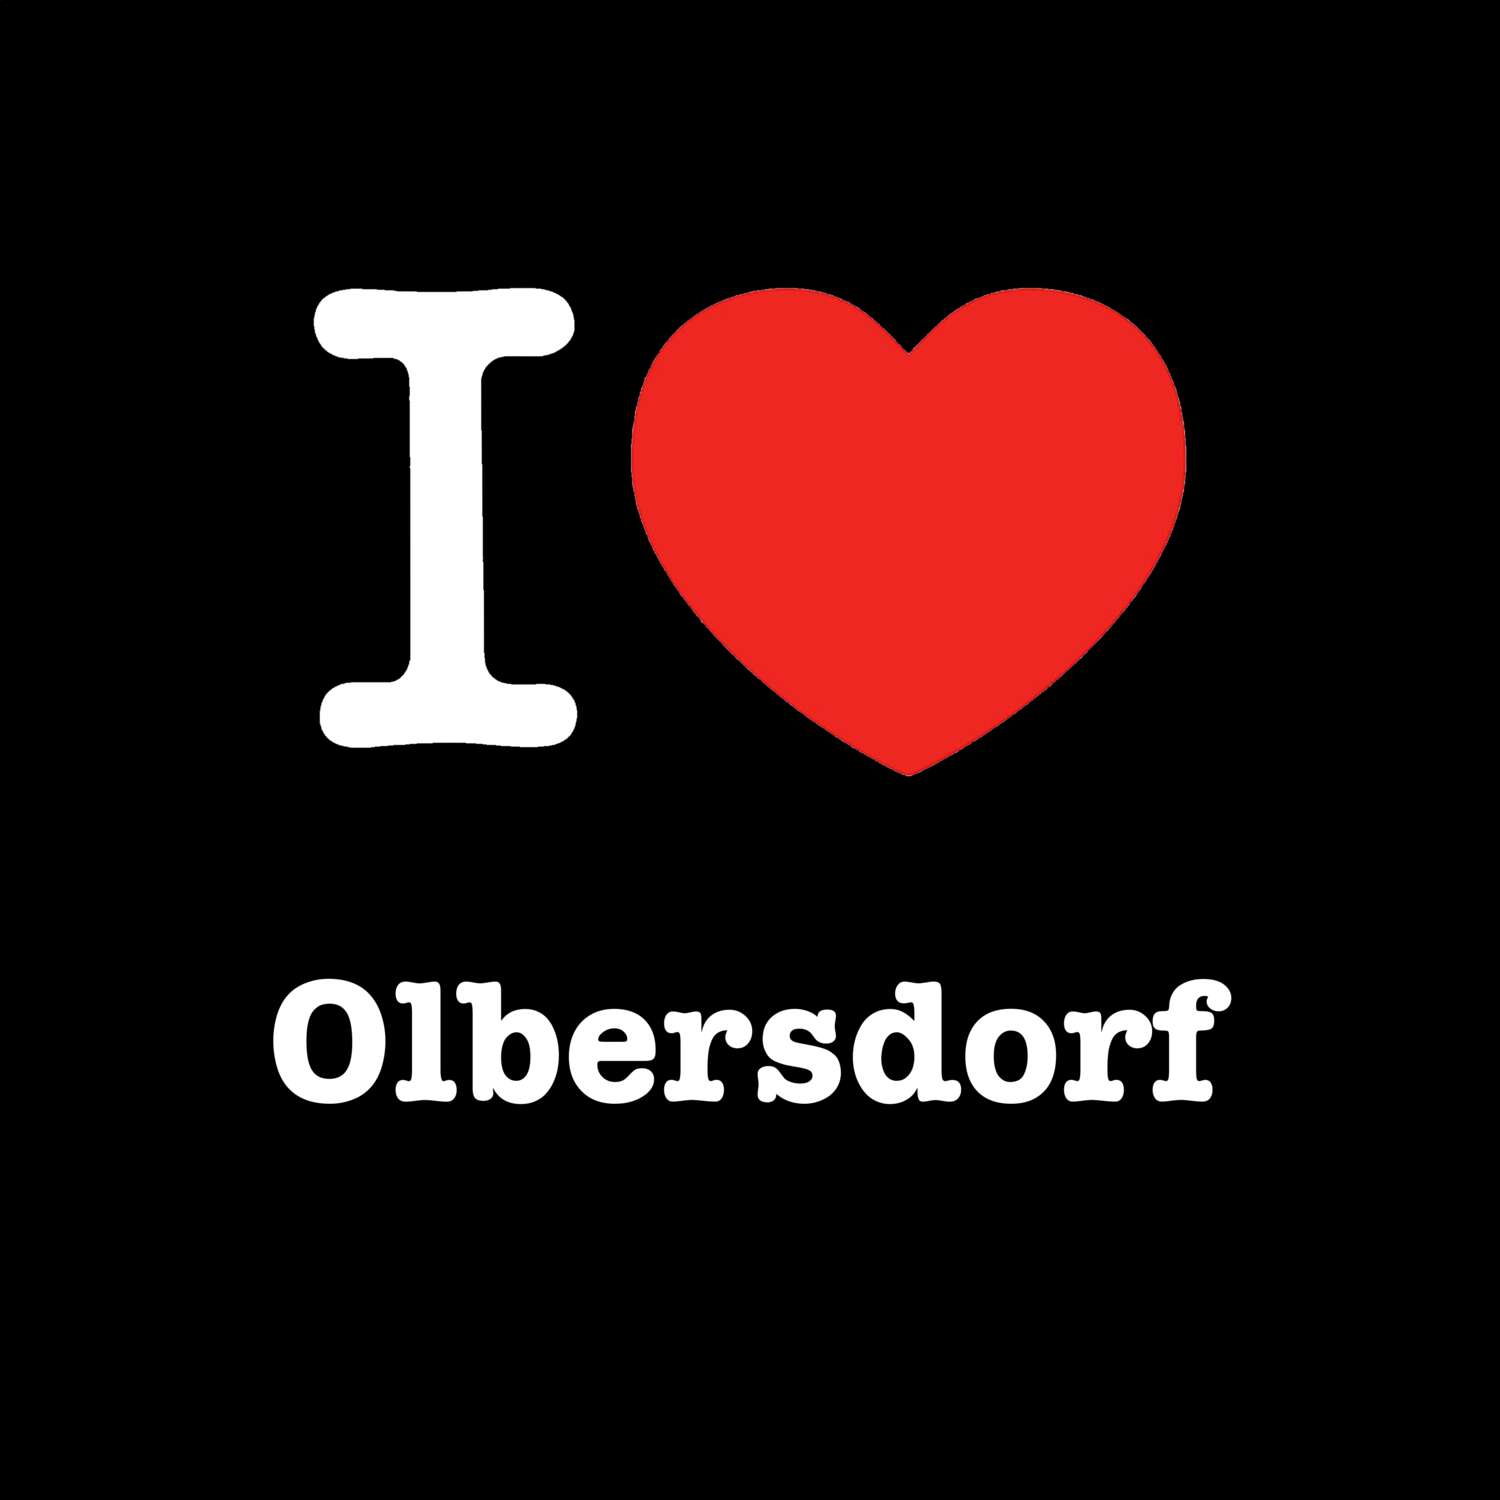 Olbersdorf T-Shirt »I love«